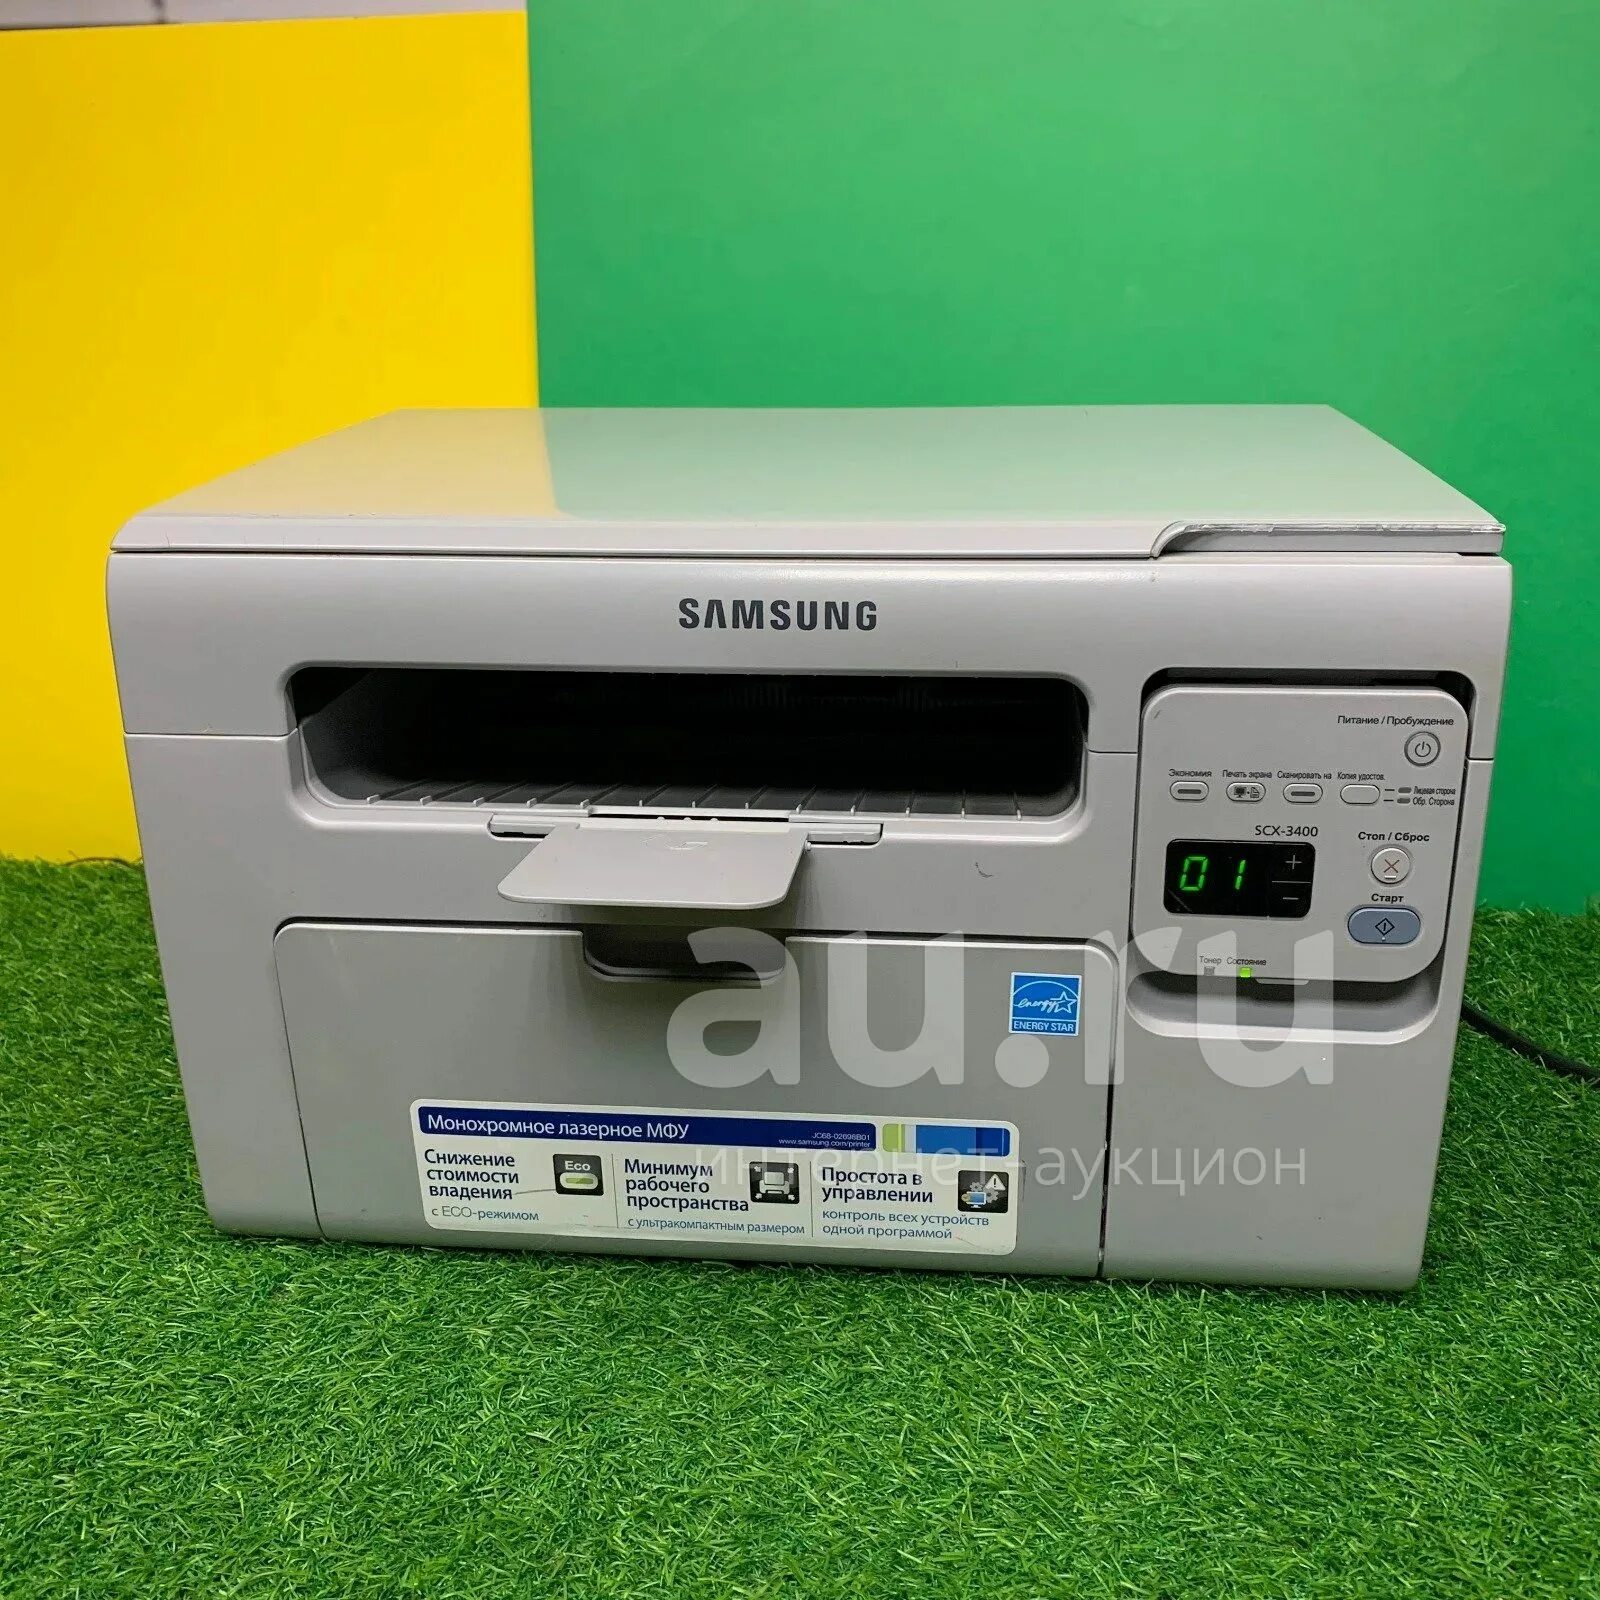 МФУ Samsung SCX-3400. Принтер самсунг 3400. Принтер самсунг SCX 3400. Принтер самсунг лазерный SCX-3400. Scx 3400 принтер купить